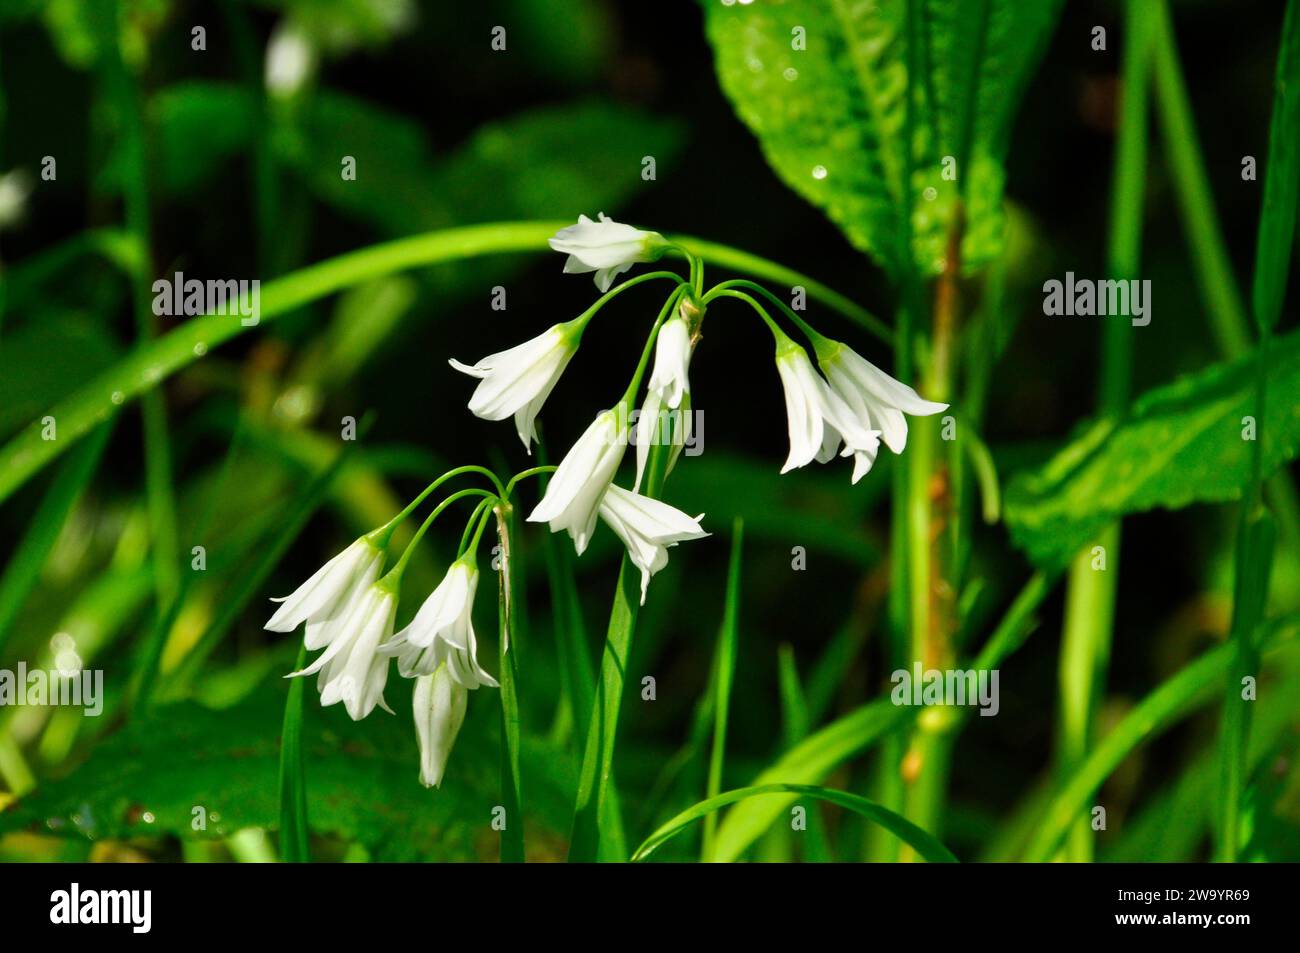 Dreieckiger Lauch, Allium triquetrum, weiße glockenartige Blüten, dreiseitiger Stiel, Frühling, wächst in einer Hecke in Cornwall, Südwest-England Stockfoto